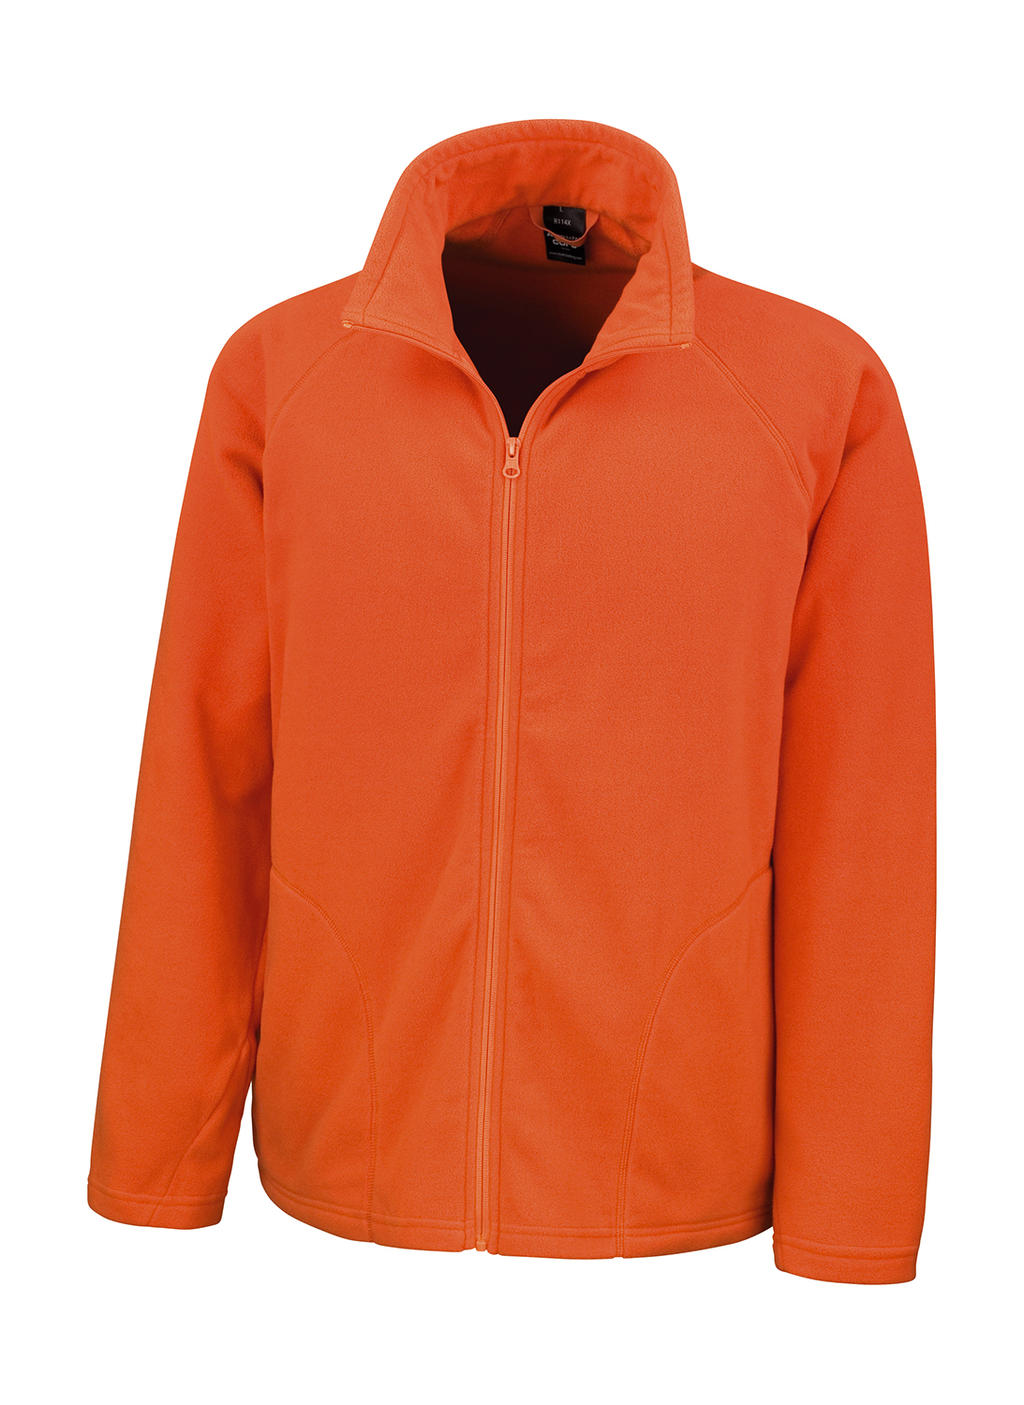  Microfleece Jacket in Farbe Orange